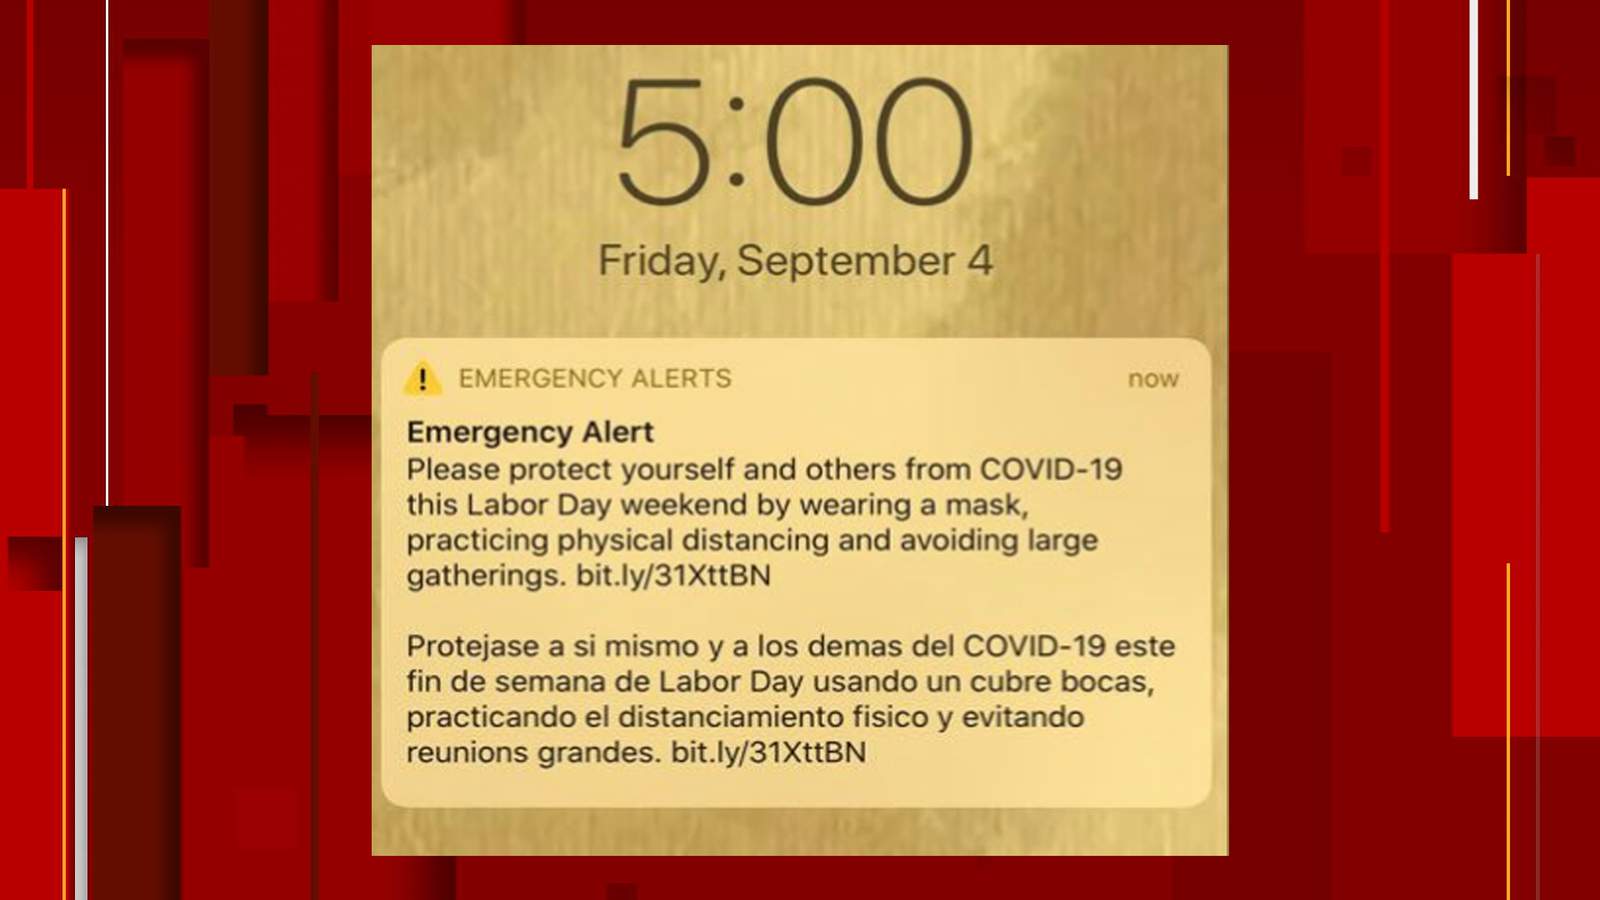 San Antonio sends emergency alert to residents ahead of Labor Day weekend